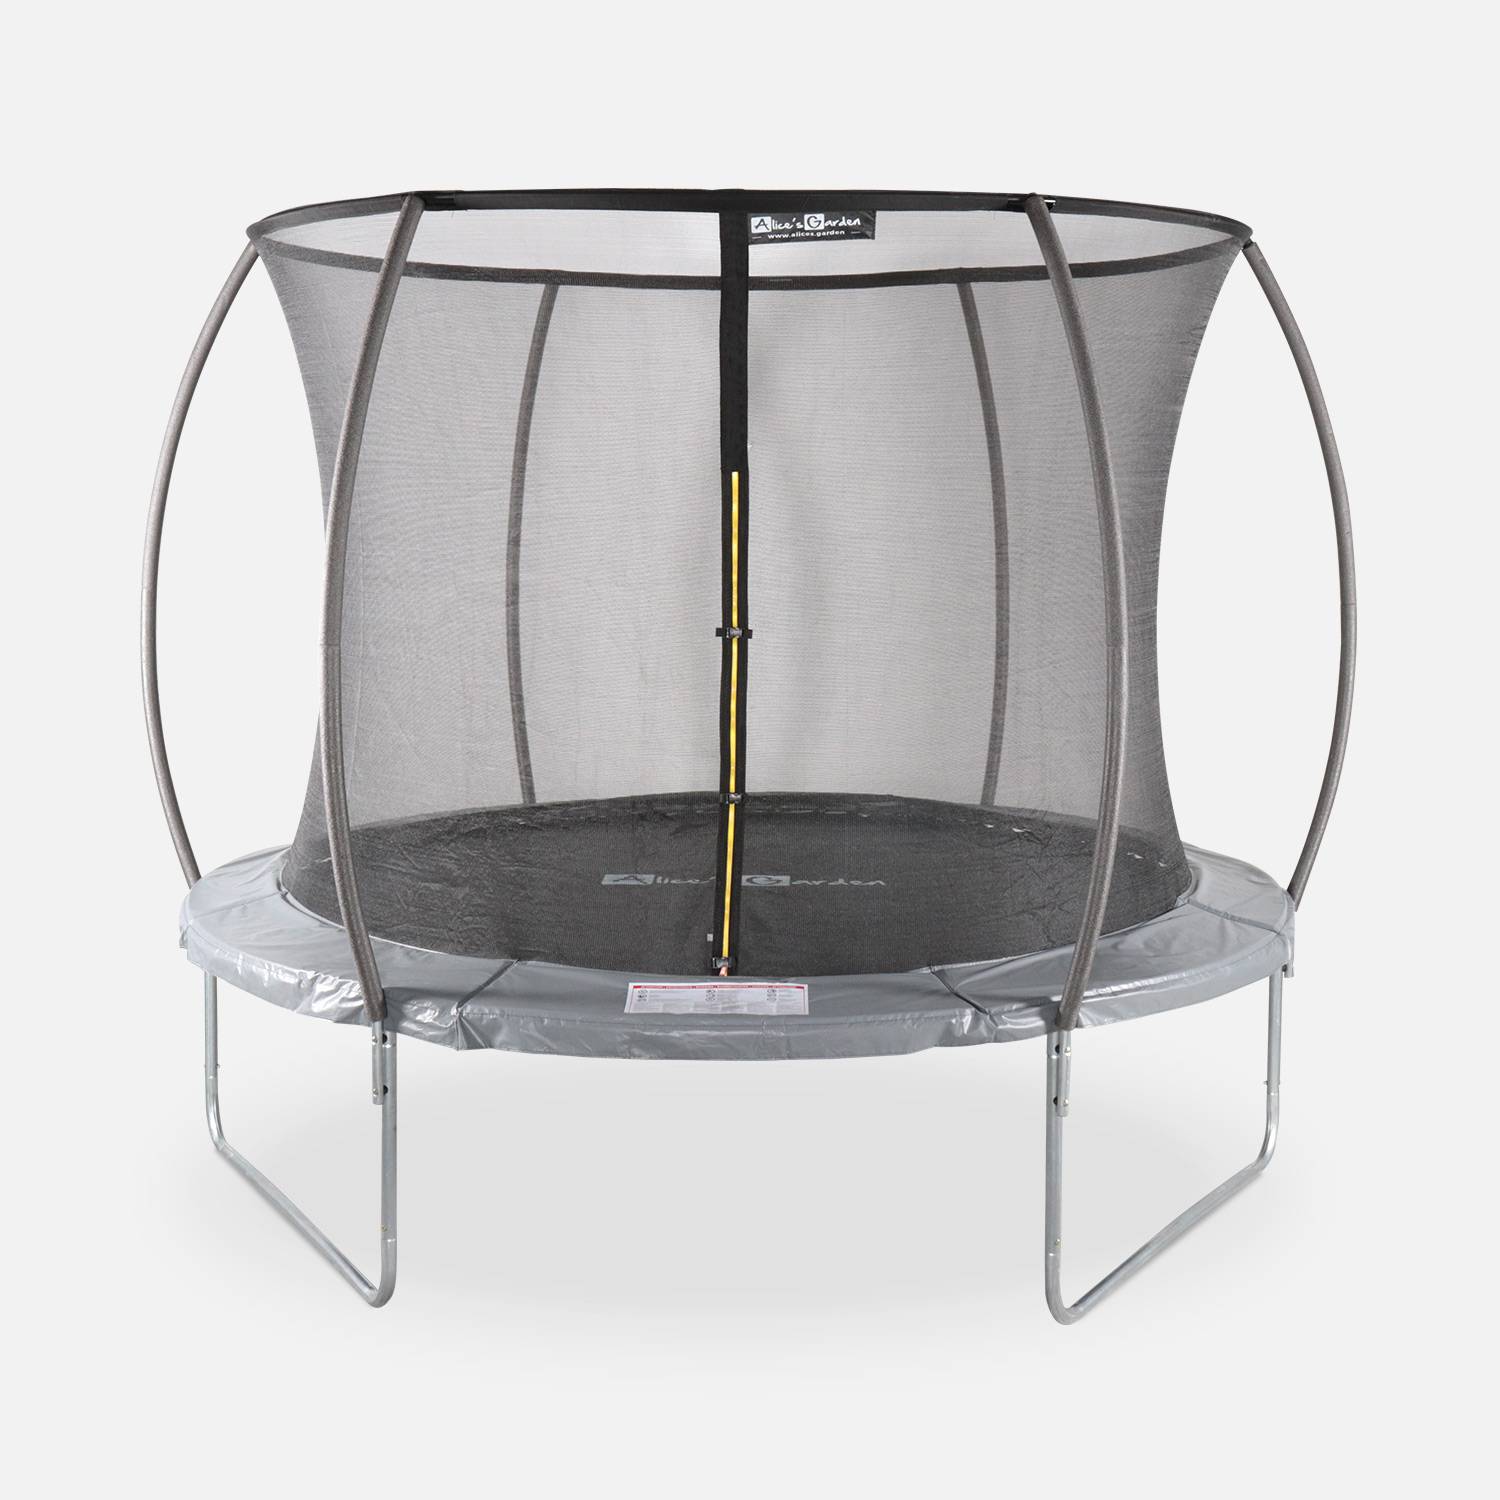 Trampolim redondo Ø 305cm cinza com rede de segurança - Mars Inner - Novo modelo - trampolim de jardim 3,05m 305 cm | Qualidade PRO | Normas da UE Photo1